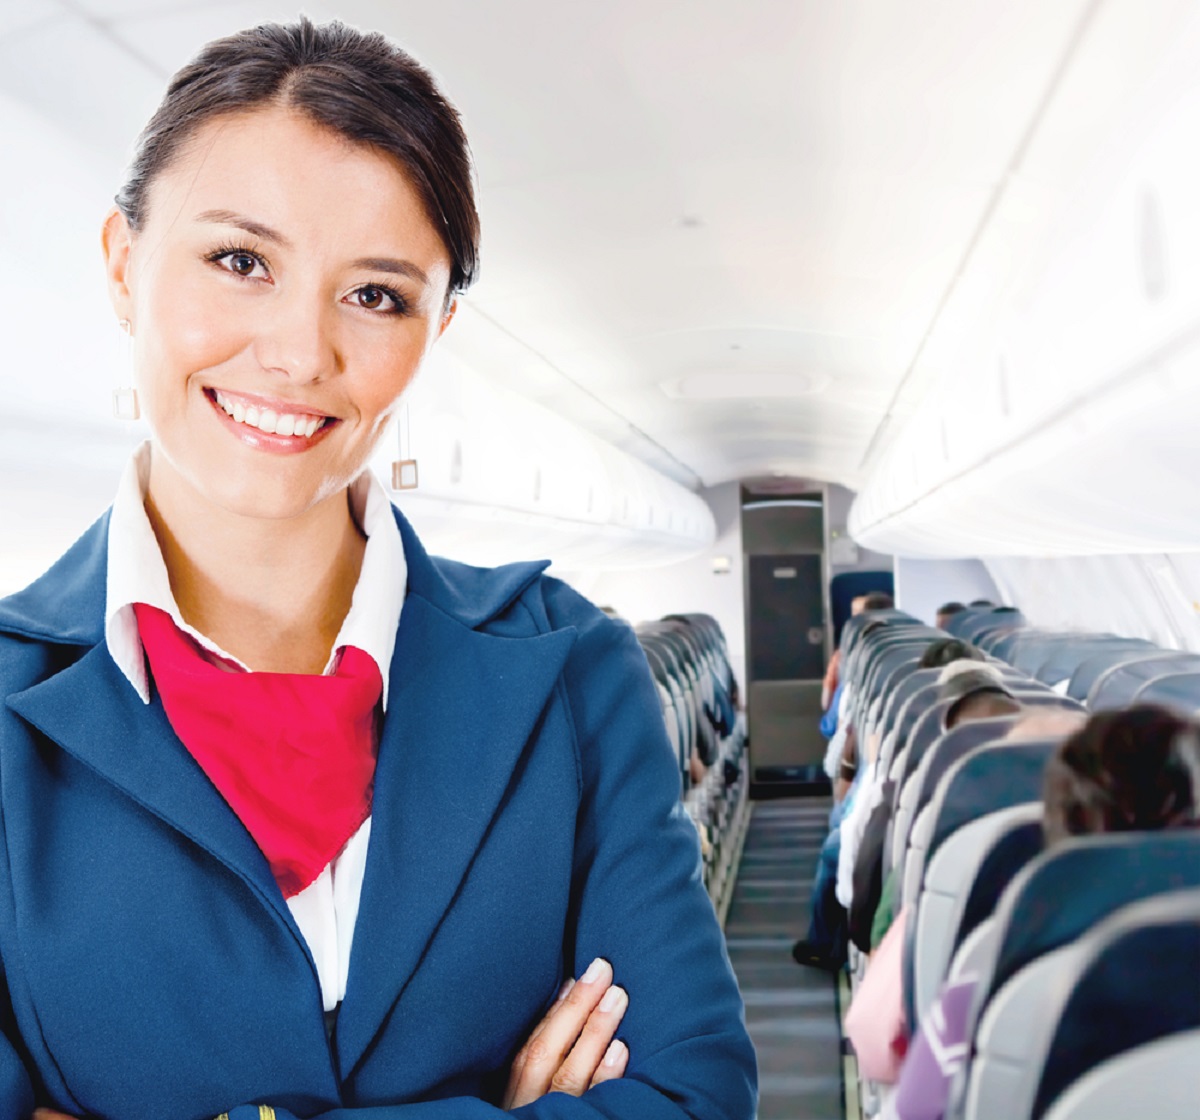 Benefits of Flight Attendant Training Programs